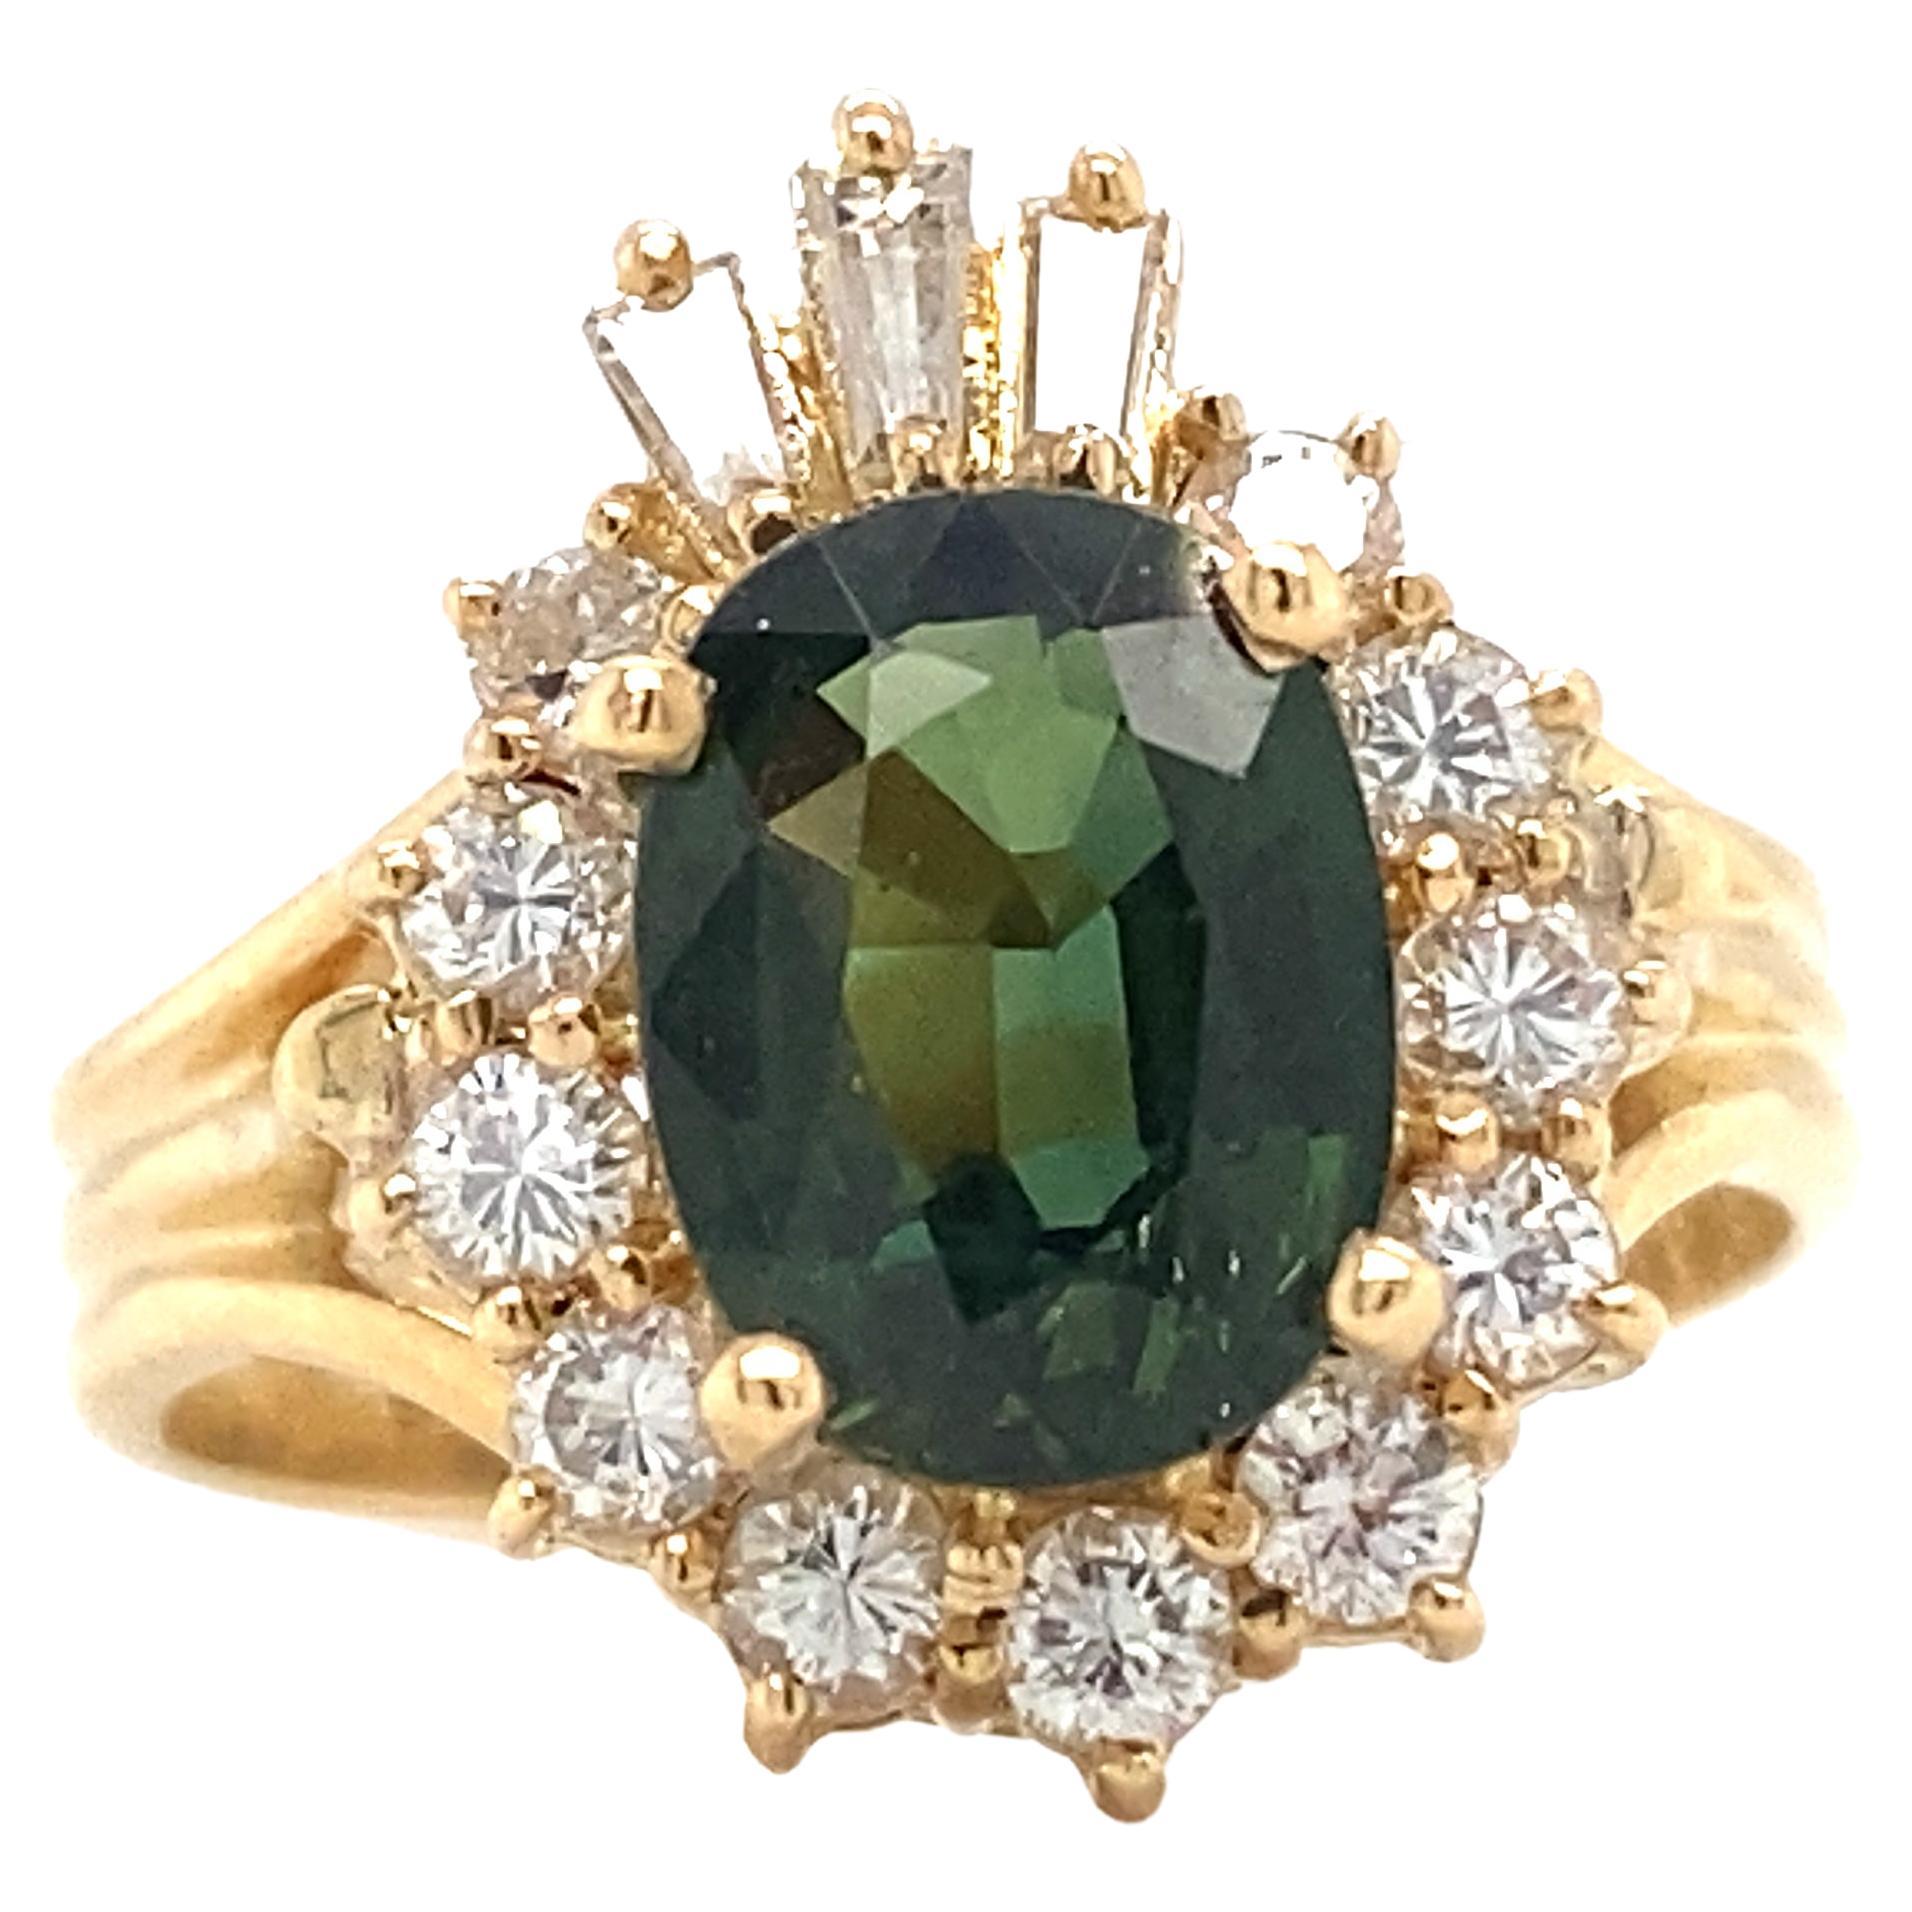 Détails de l'article : Cette bague unique de Le Vian est ornée d'un saphir vert et de diamants. La couleur éclatante du saphir vert s'harmonise parfaitement avec les diamants étincelants et l'or jaune. Tous les diamants et saphirs sont sertis. Les